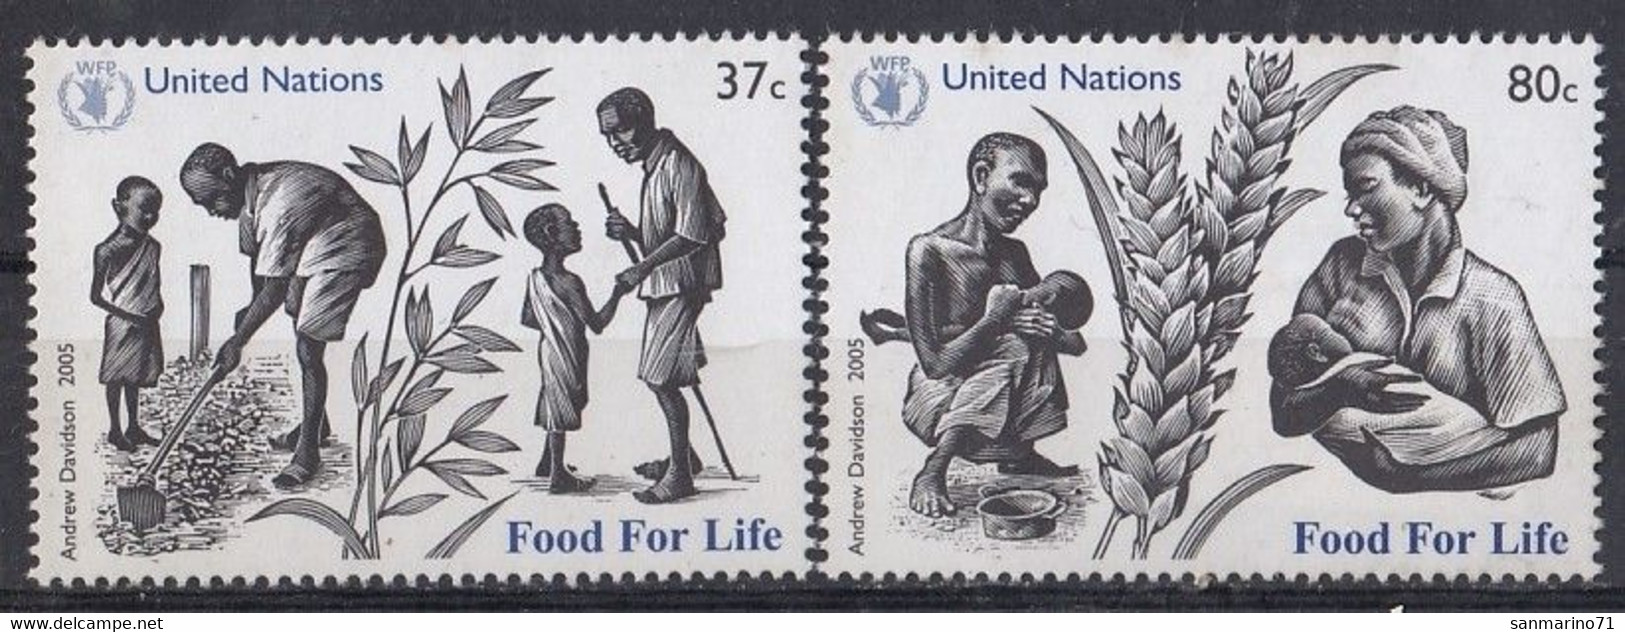 UNITED NATION New York 996-997,unused - ACF - Aktion Gegen Den Hunger